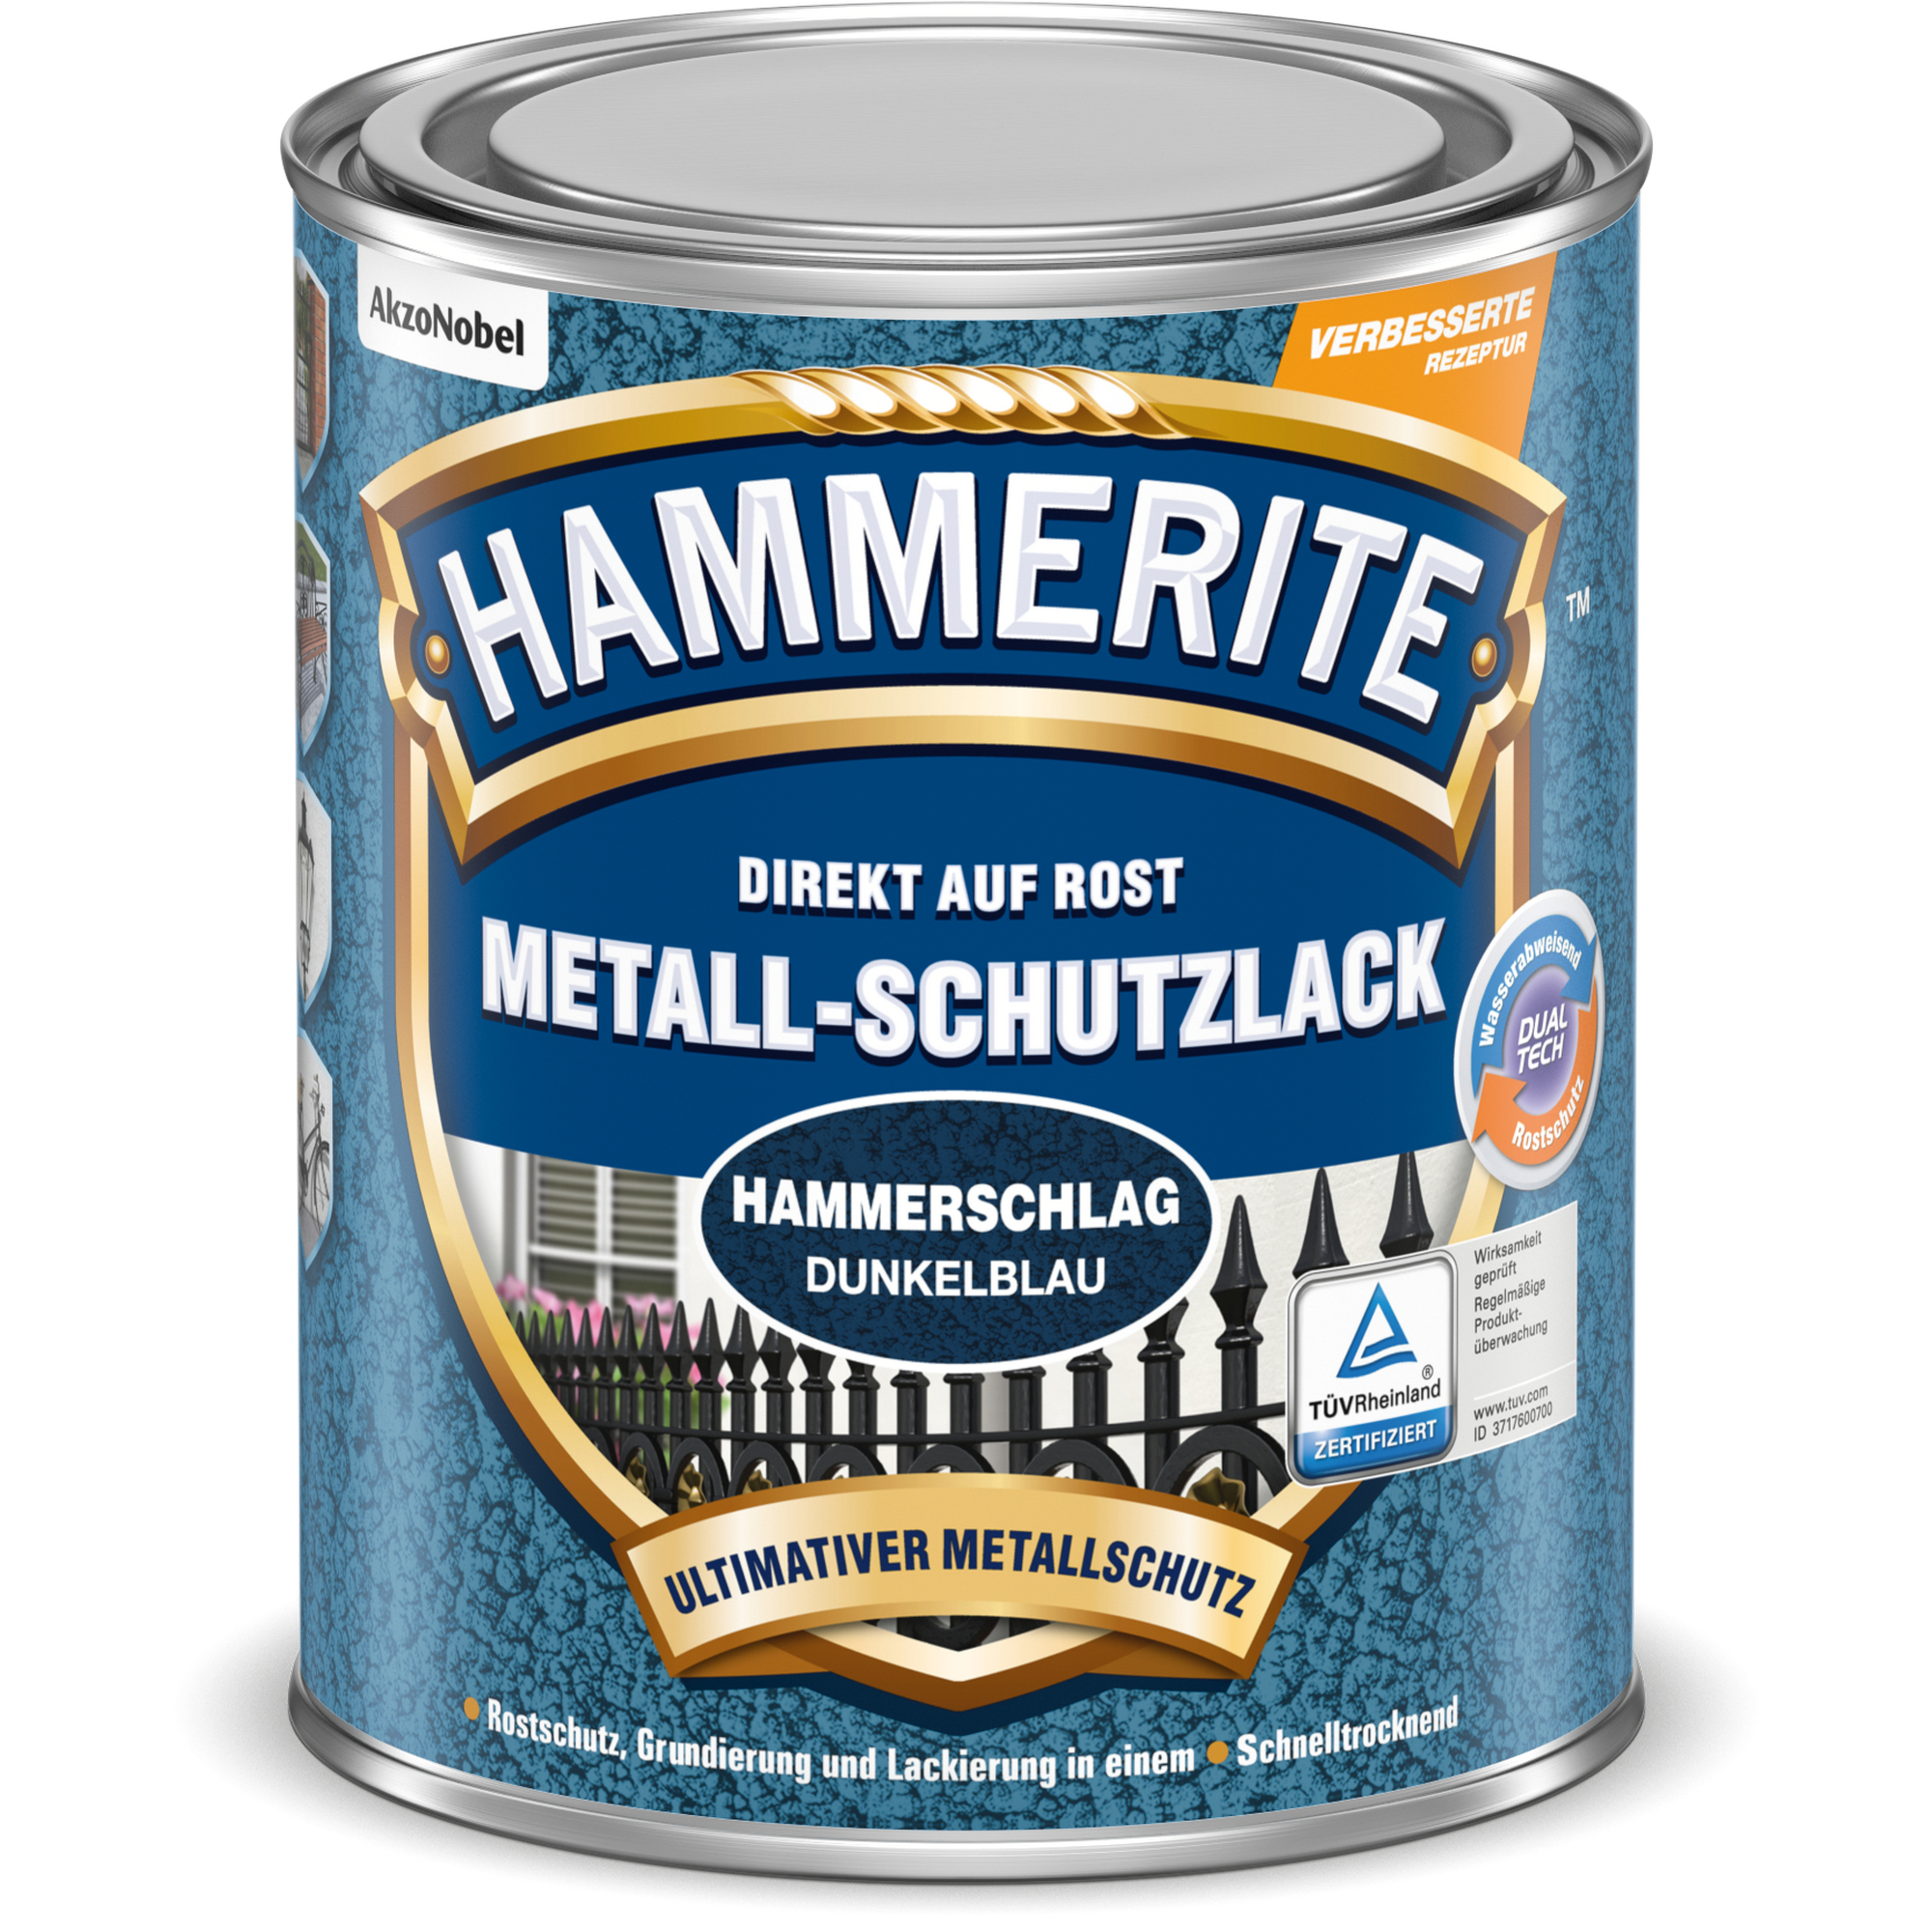 Metallschutzlack Hammerschlag-Effekt dunkelblau 250 ml + product picture